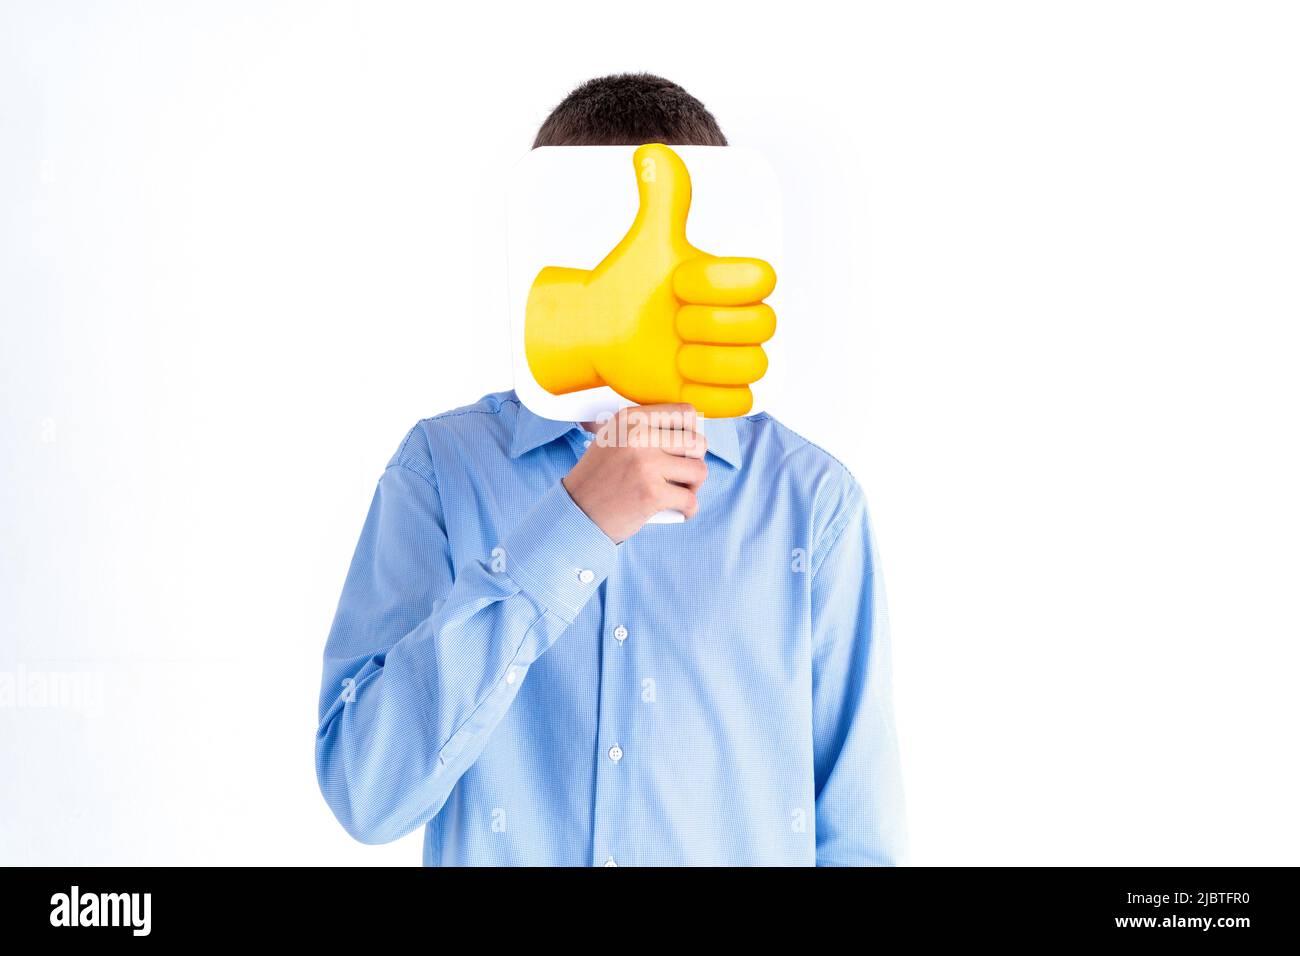 Social Media, Blogging und People-Konzept - Teenager-Junge in blauem Hemd mit Daumen nach oben Emoticon auf weißem Hintergrund. Das Gesicht ist geschlossen. Türkei, Ist Stockfoto